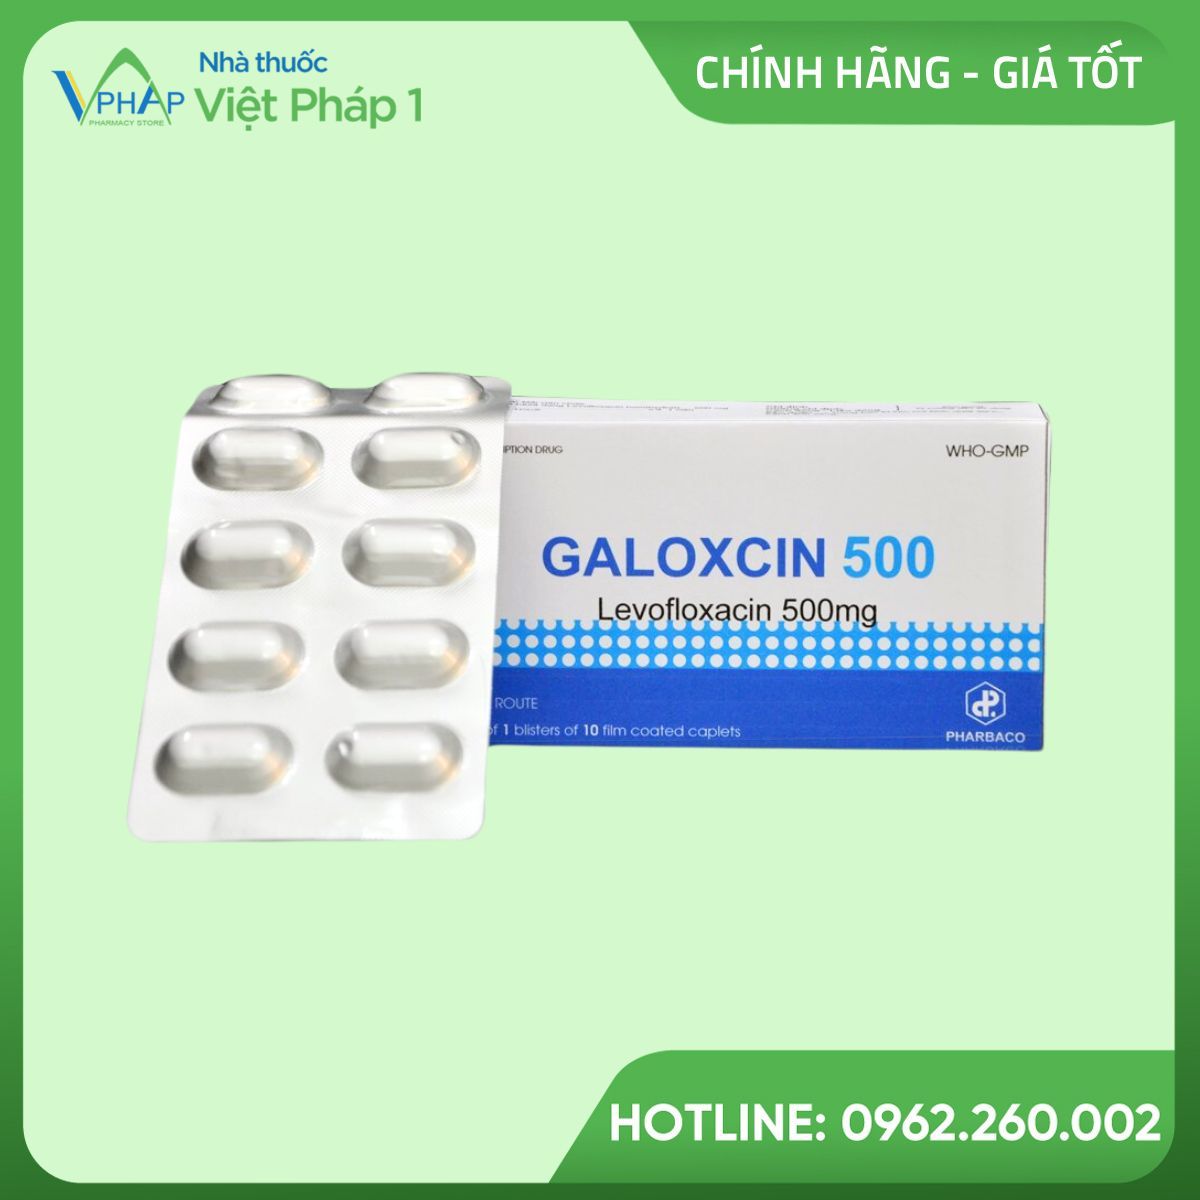 Hình ảnh hộp và vỉ thuốc Galoxcin 500